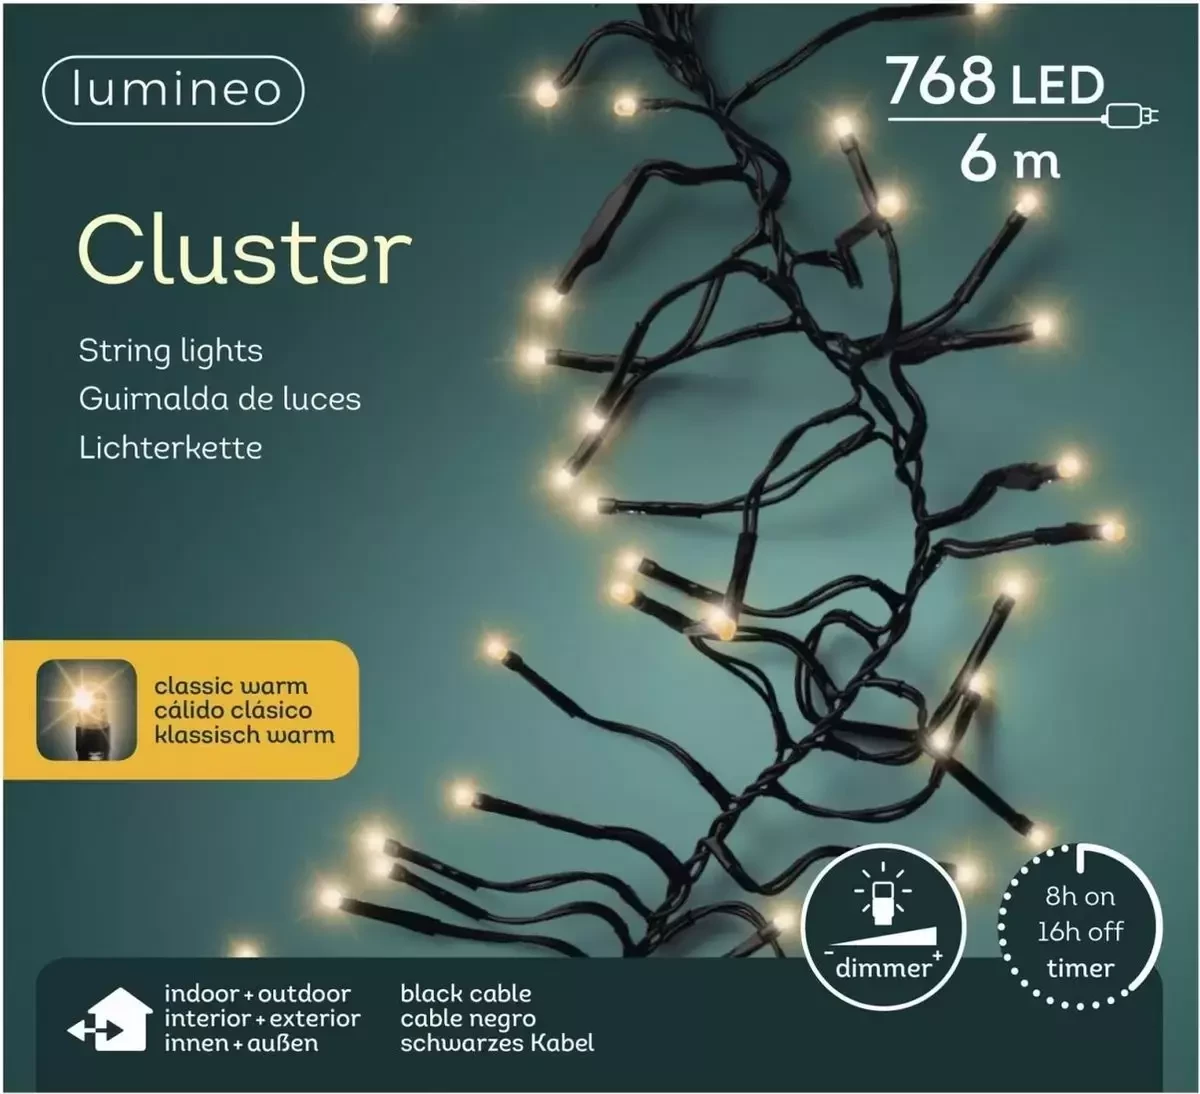 LUMINEO CLUSTERVERLICHTING 6M - 768L KLASSIEK WARM - BINNEN/ BUITEN